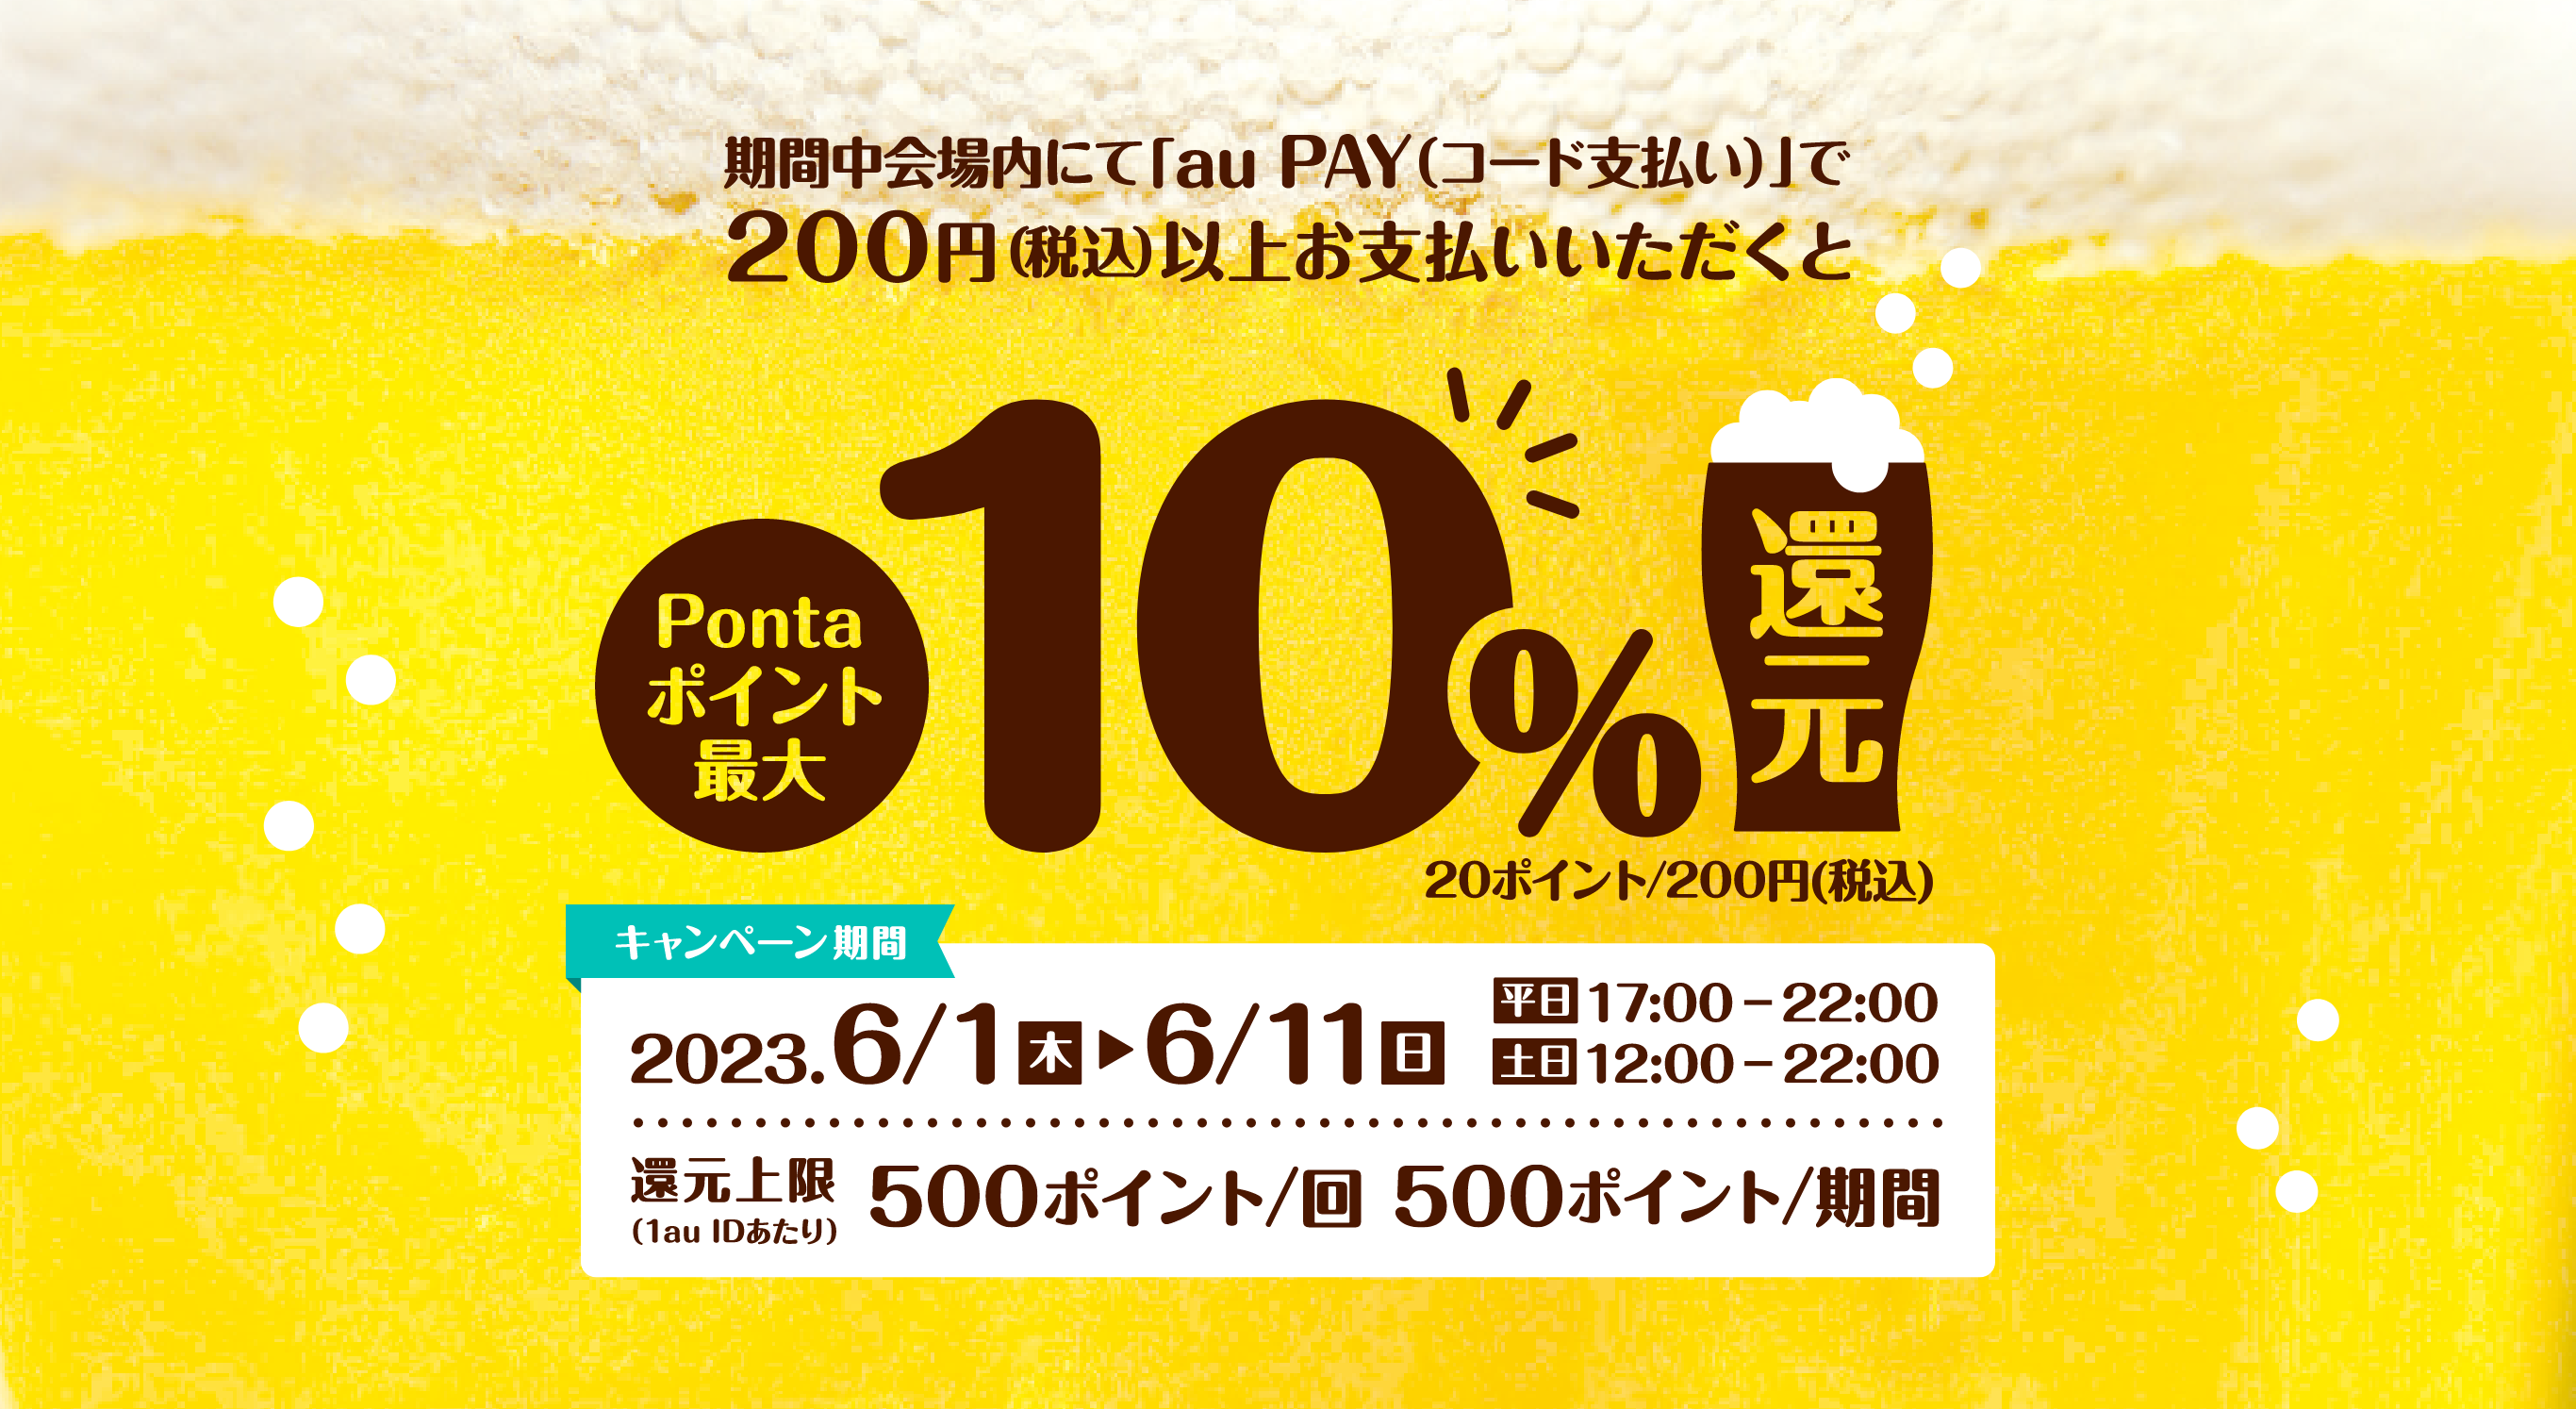 期間中会場内にて「auPAY（コード支払い）」で200円（税込）以上お買い物いただくとPontaポイント最大10%還元